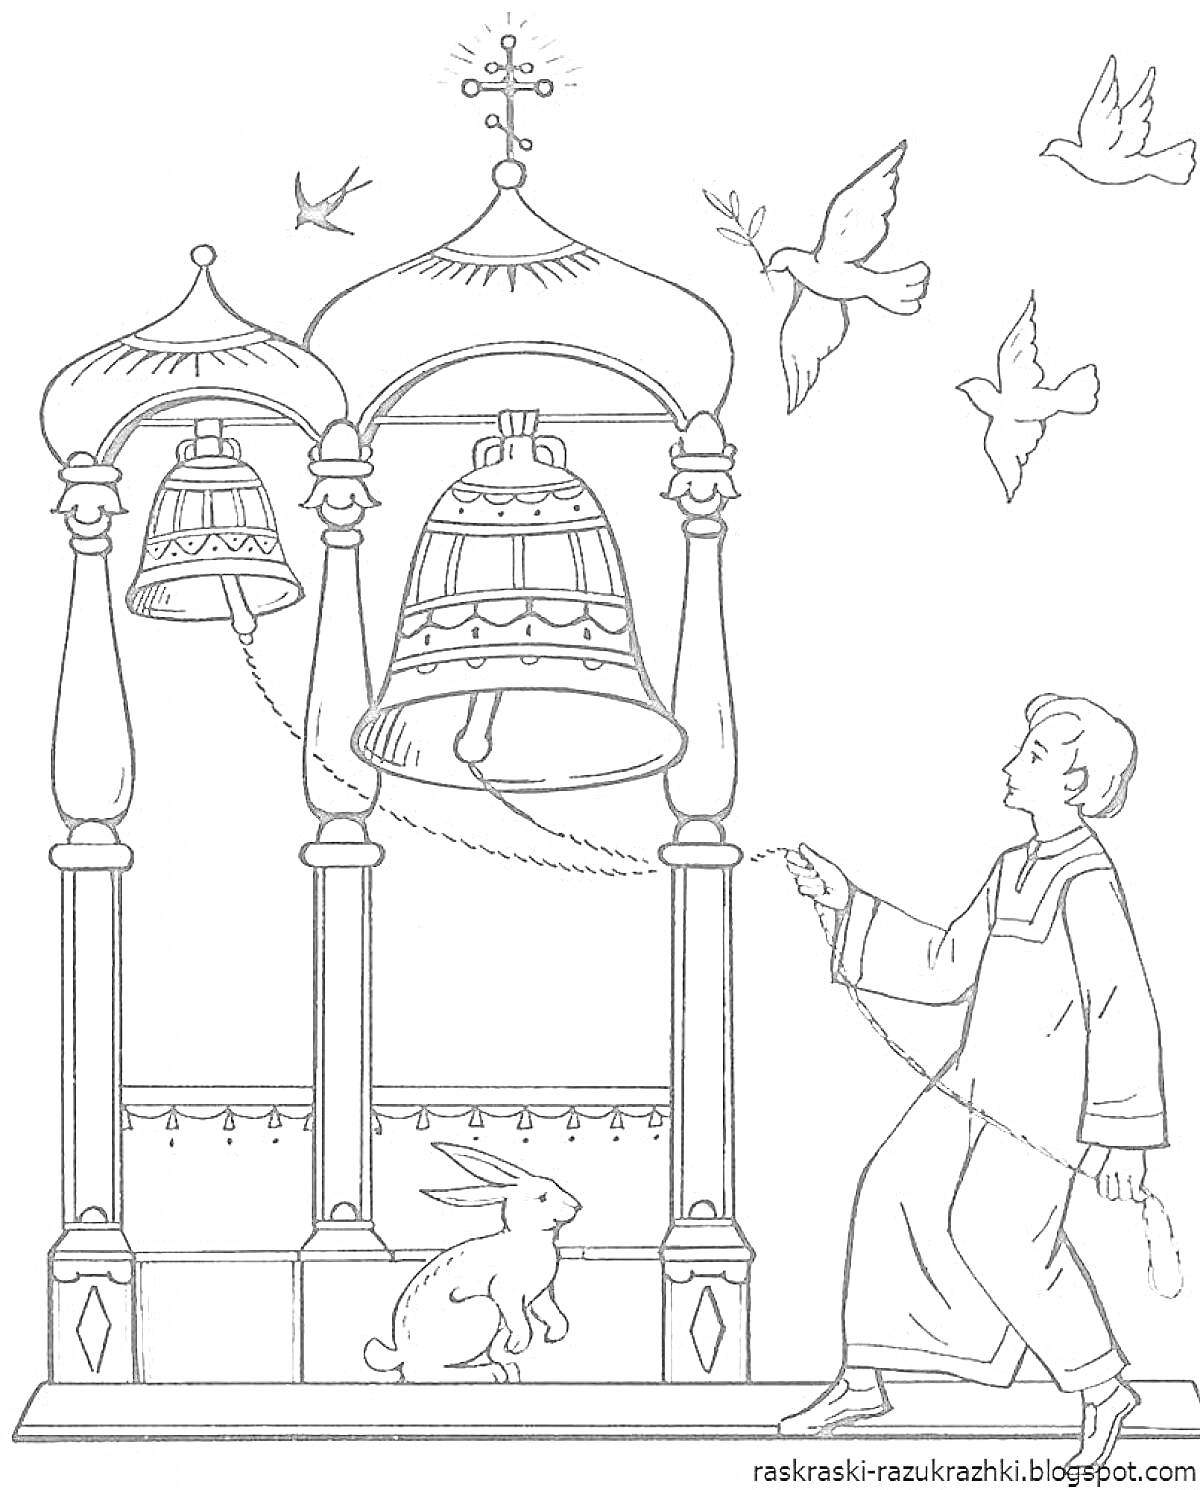 Раскраска Колокольня с тремя куполами, висящими колоколами, человеком, звенящим колокол, птицами в полете и кроликом на земле